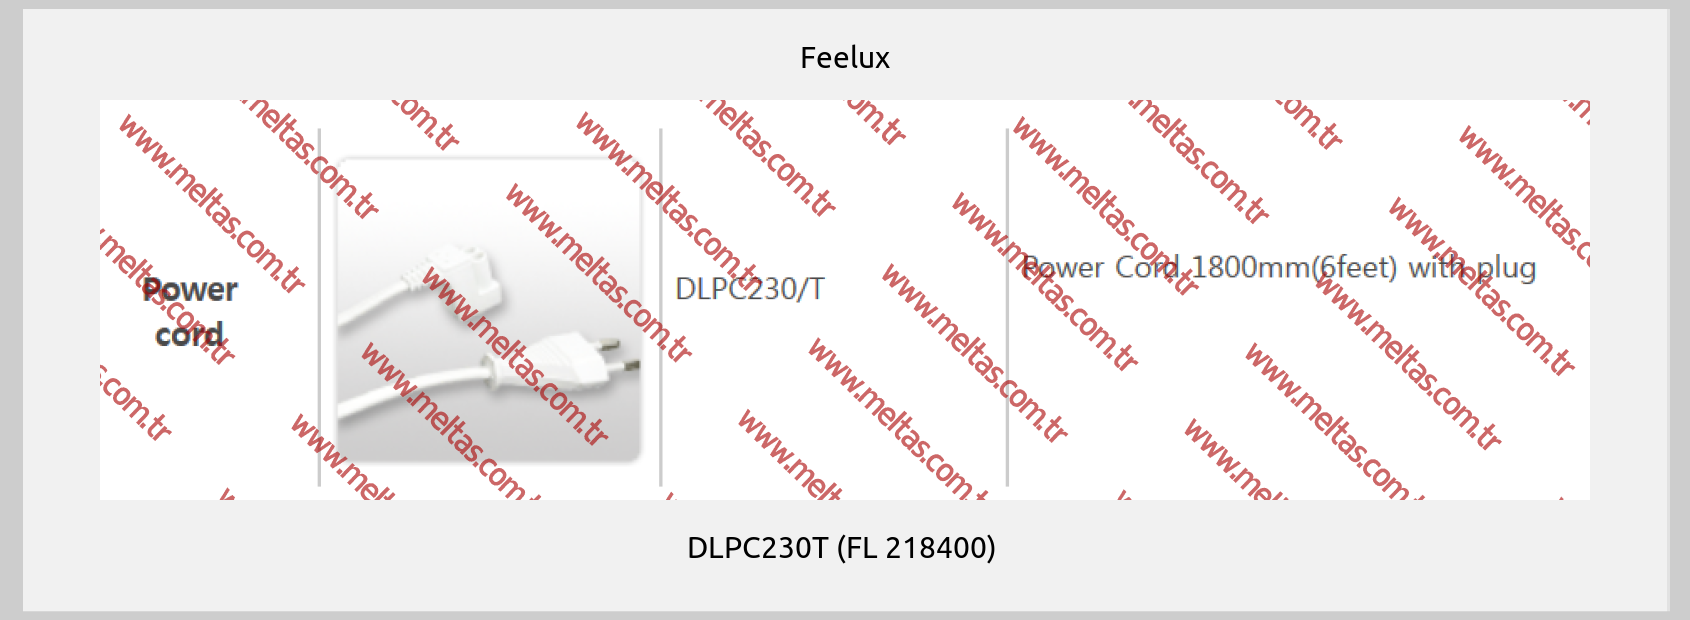 Feelux - DLPC230T (FL 218400) 